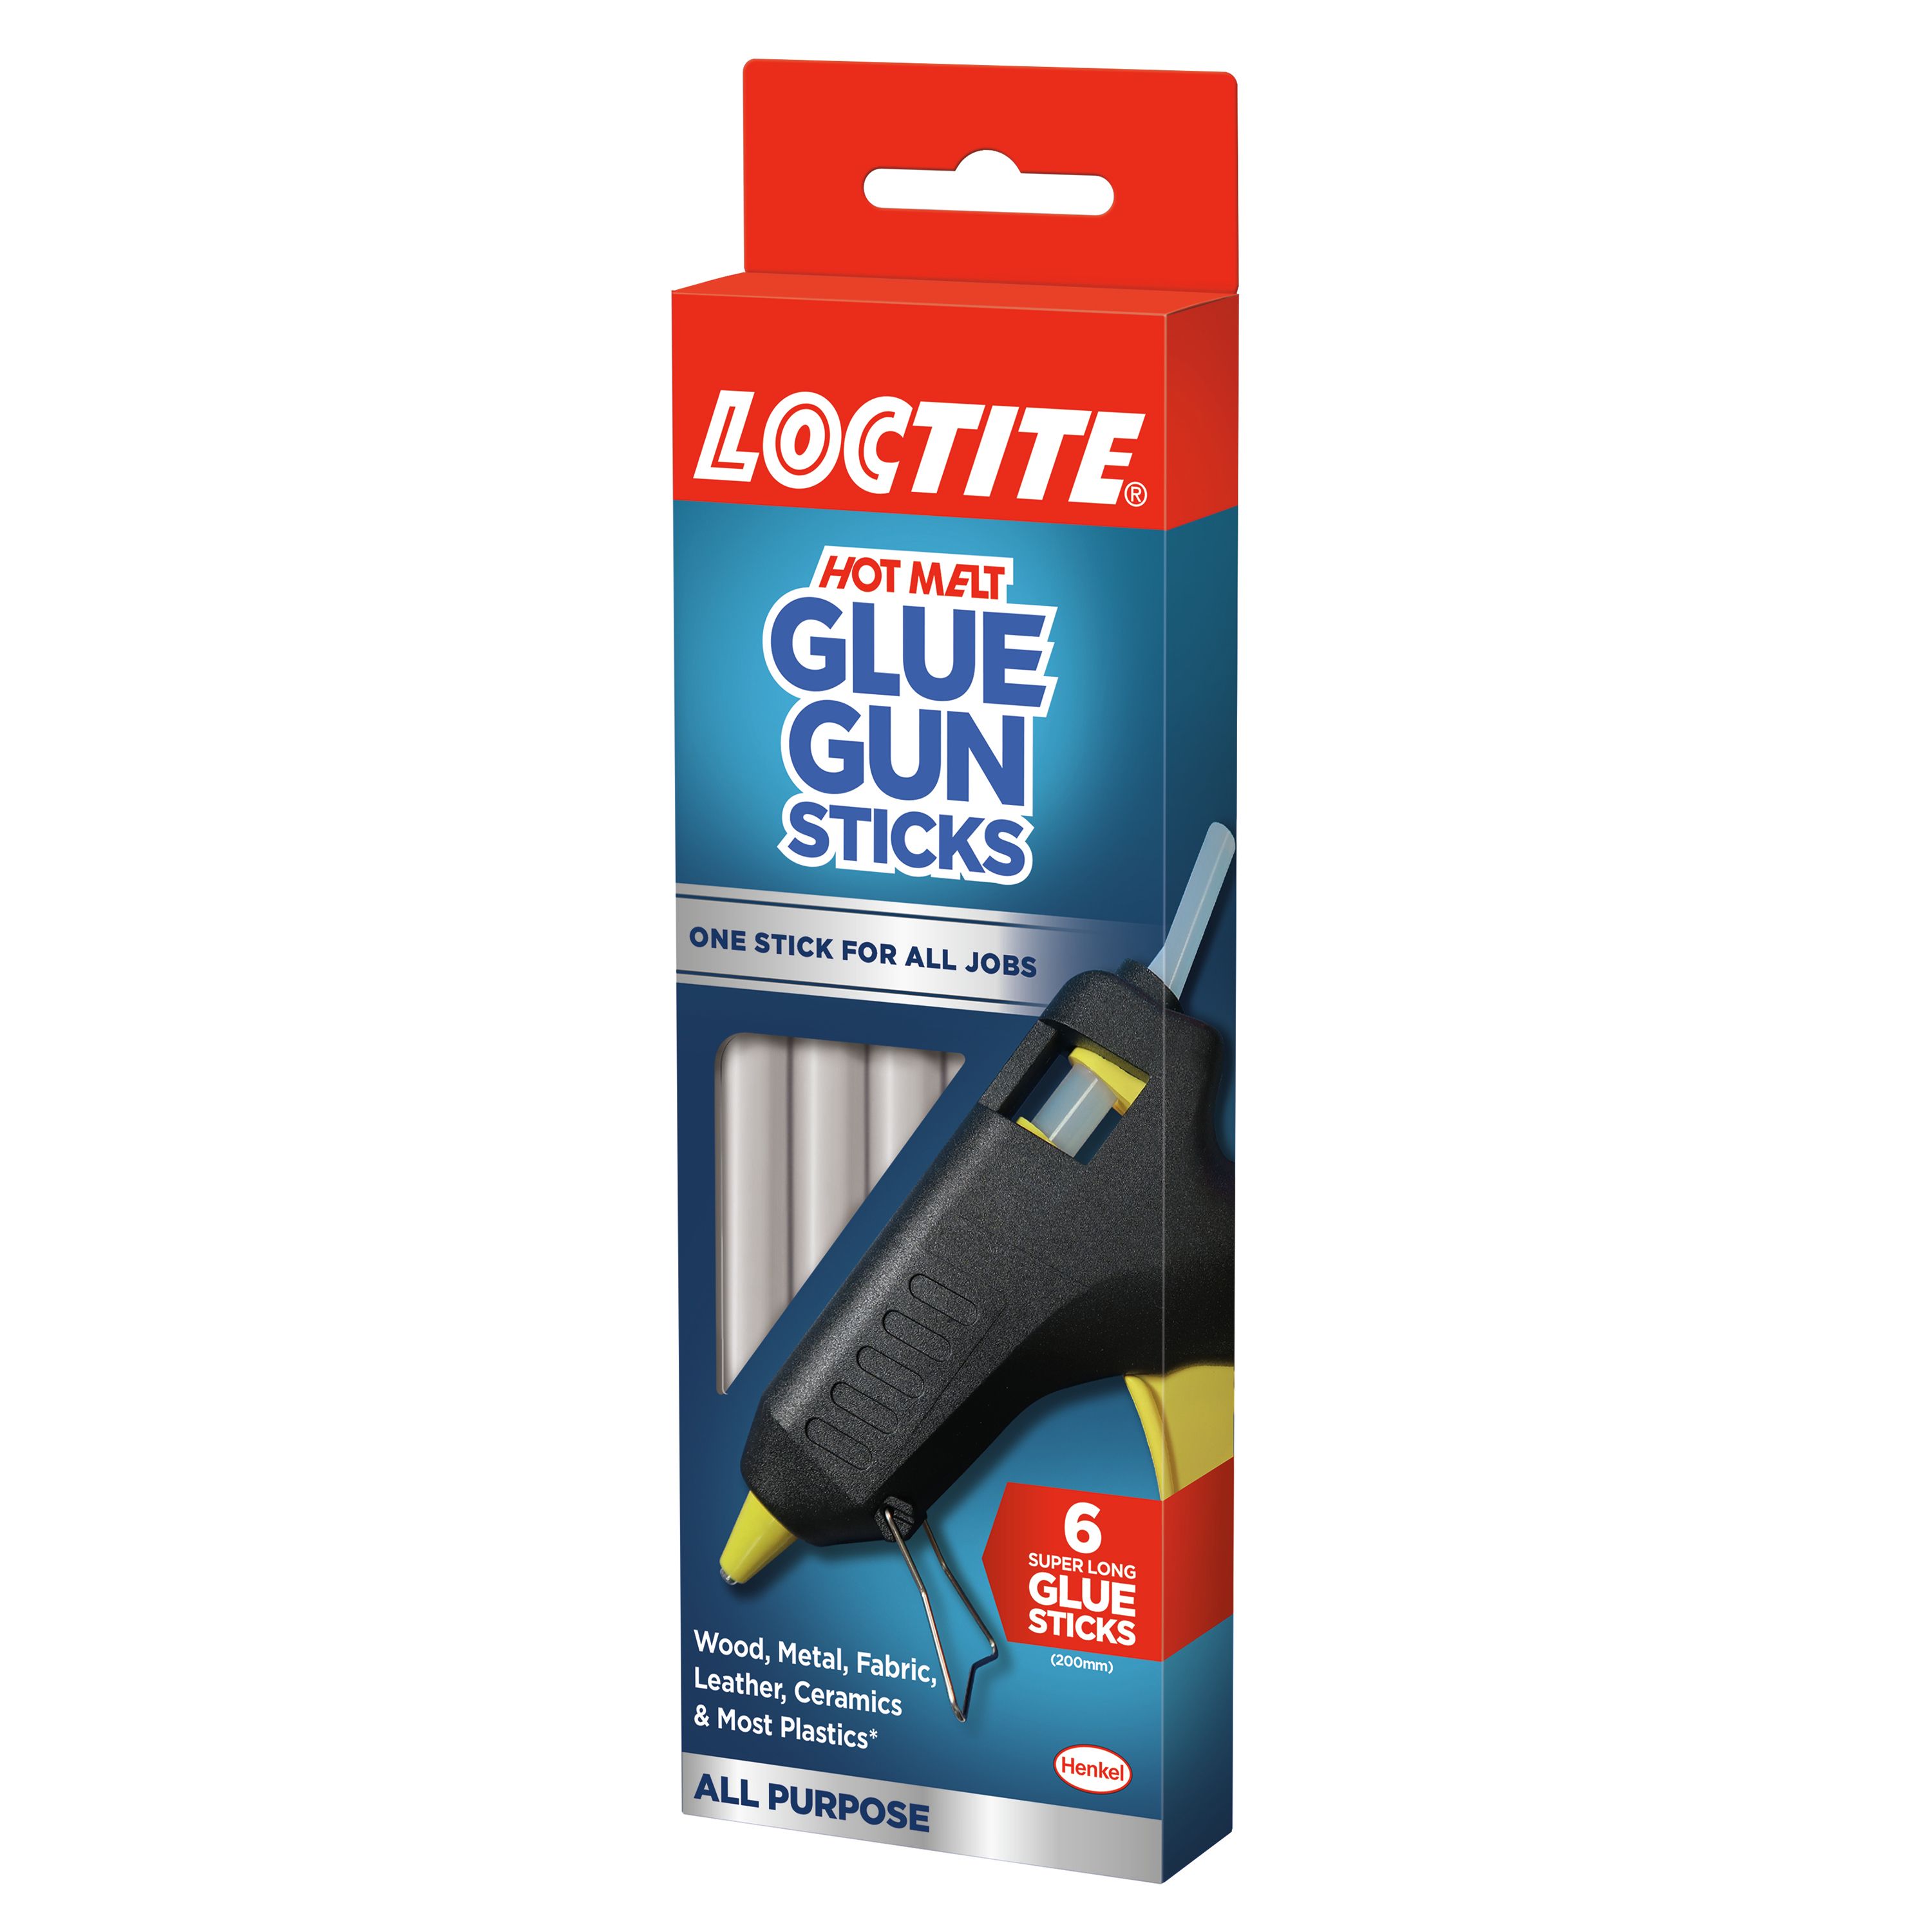 Caliber Glue Sticks - 0.25 oz | CVS